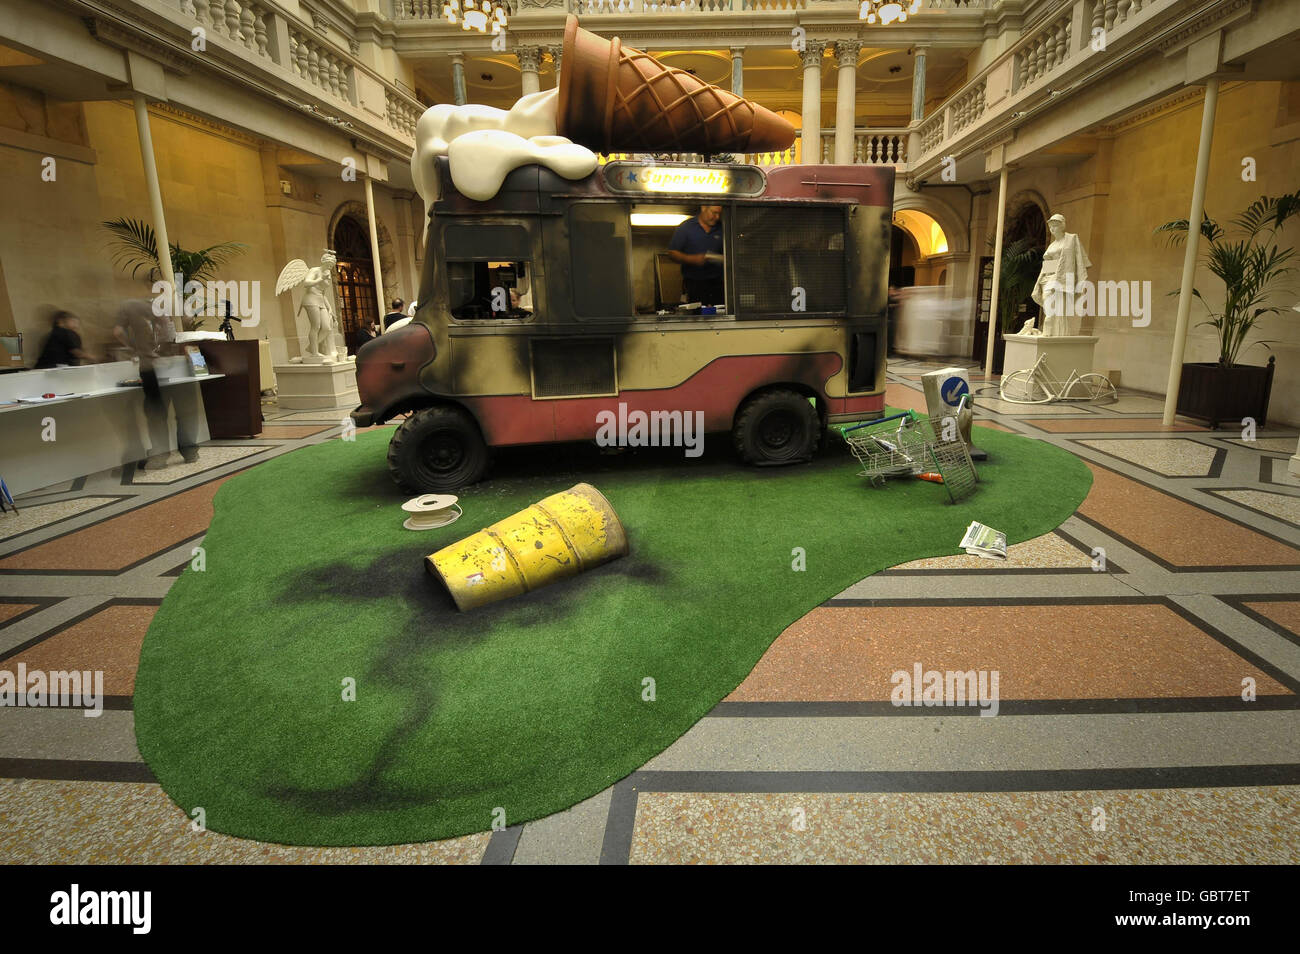 Eine Installationskunst, die einen abgewrackten und grafikierten Eiswagen im Bristol Museum zeigt, wo der Künstler Banksy seine Arbeiten ausstellt. Stockfoto